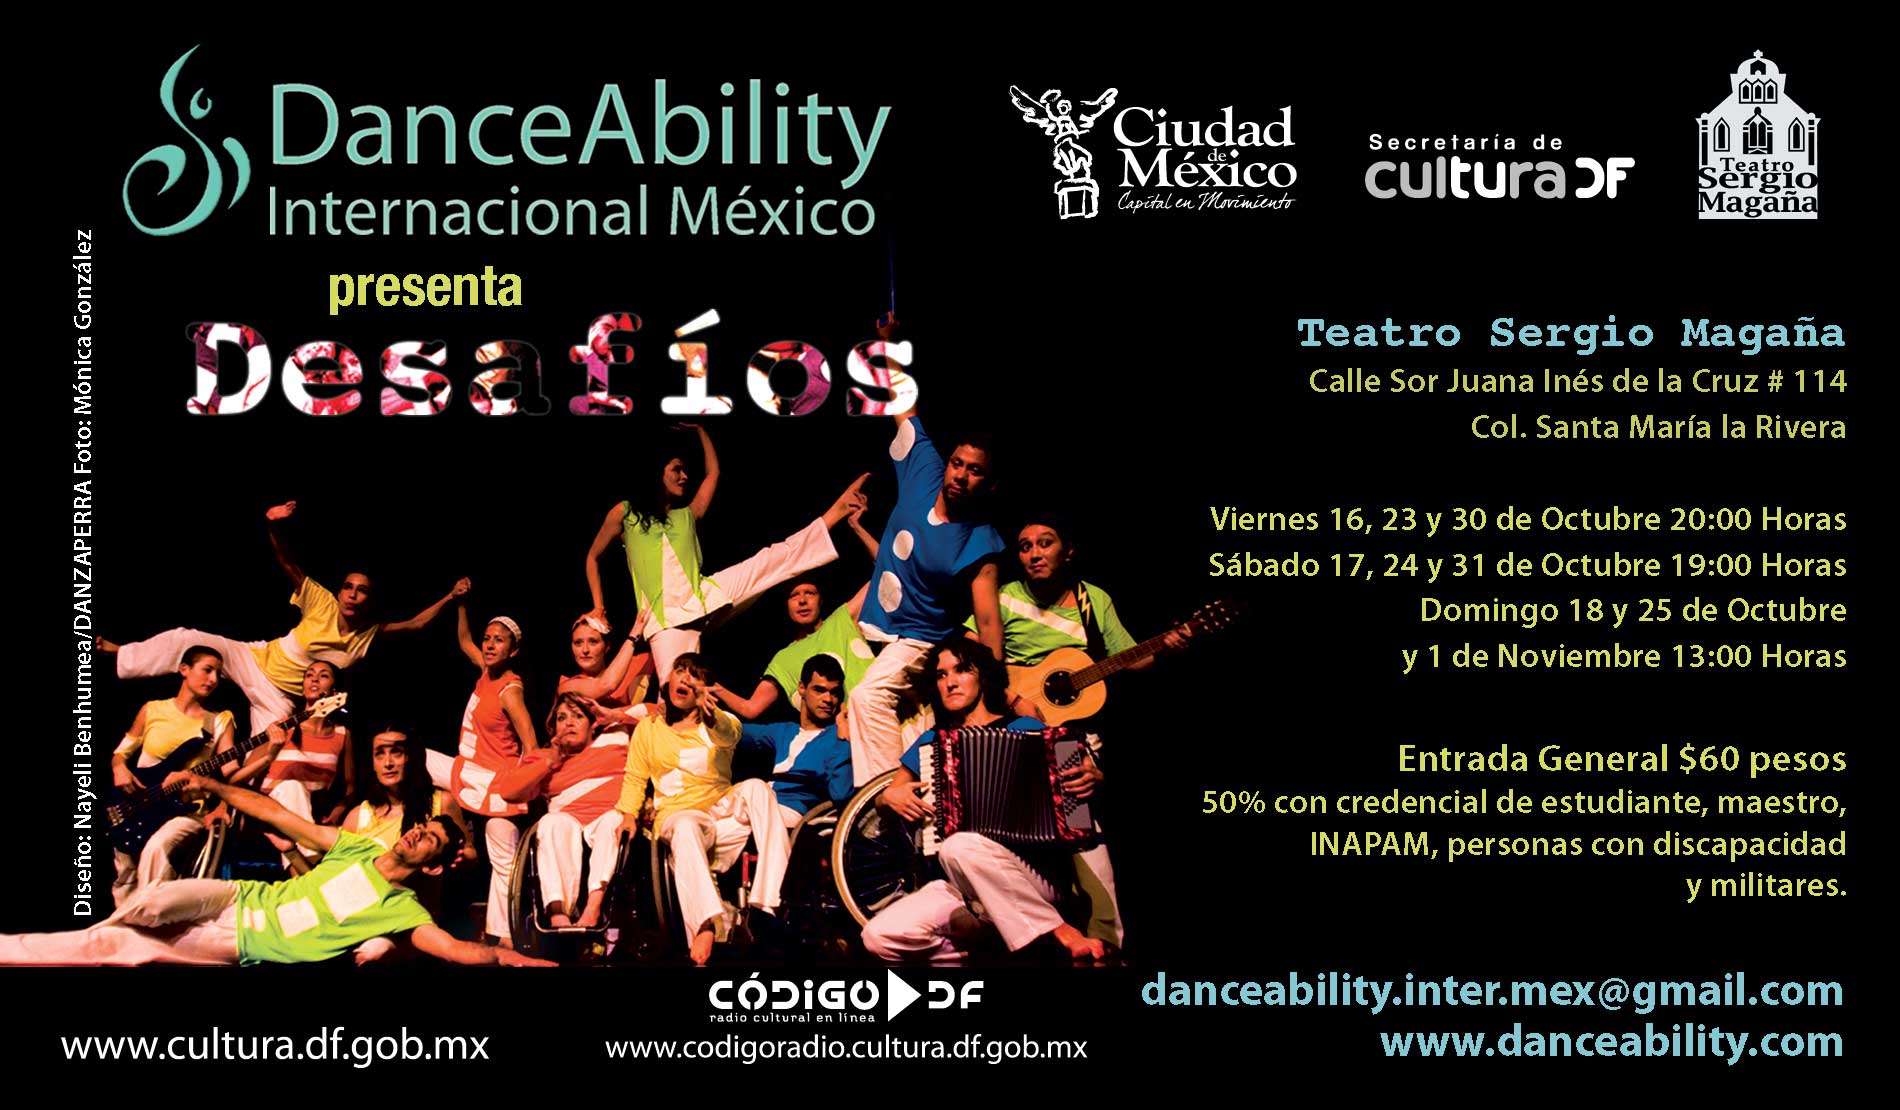 <b>¡El trabajo del grupo DanceAbility Internacional México está cobrando fuerza en el país! </b>
 
Gracias al éxito de su presentación el pasado 23...